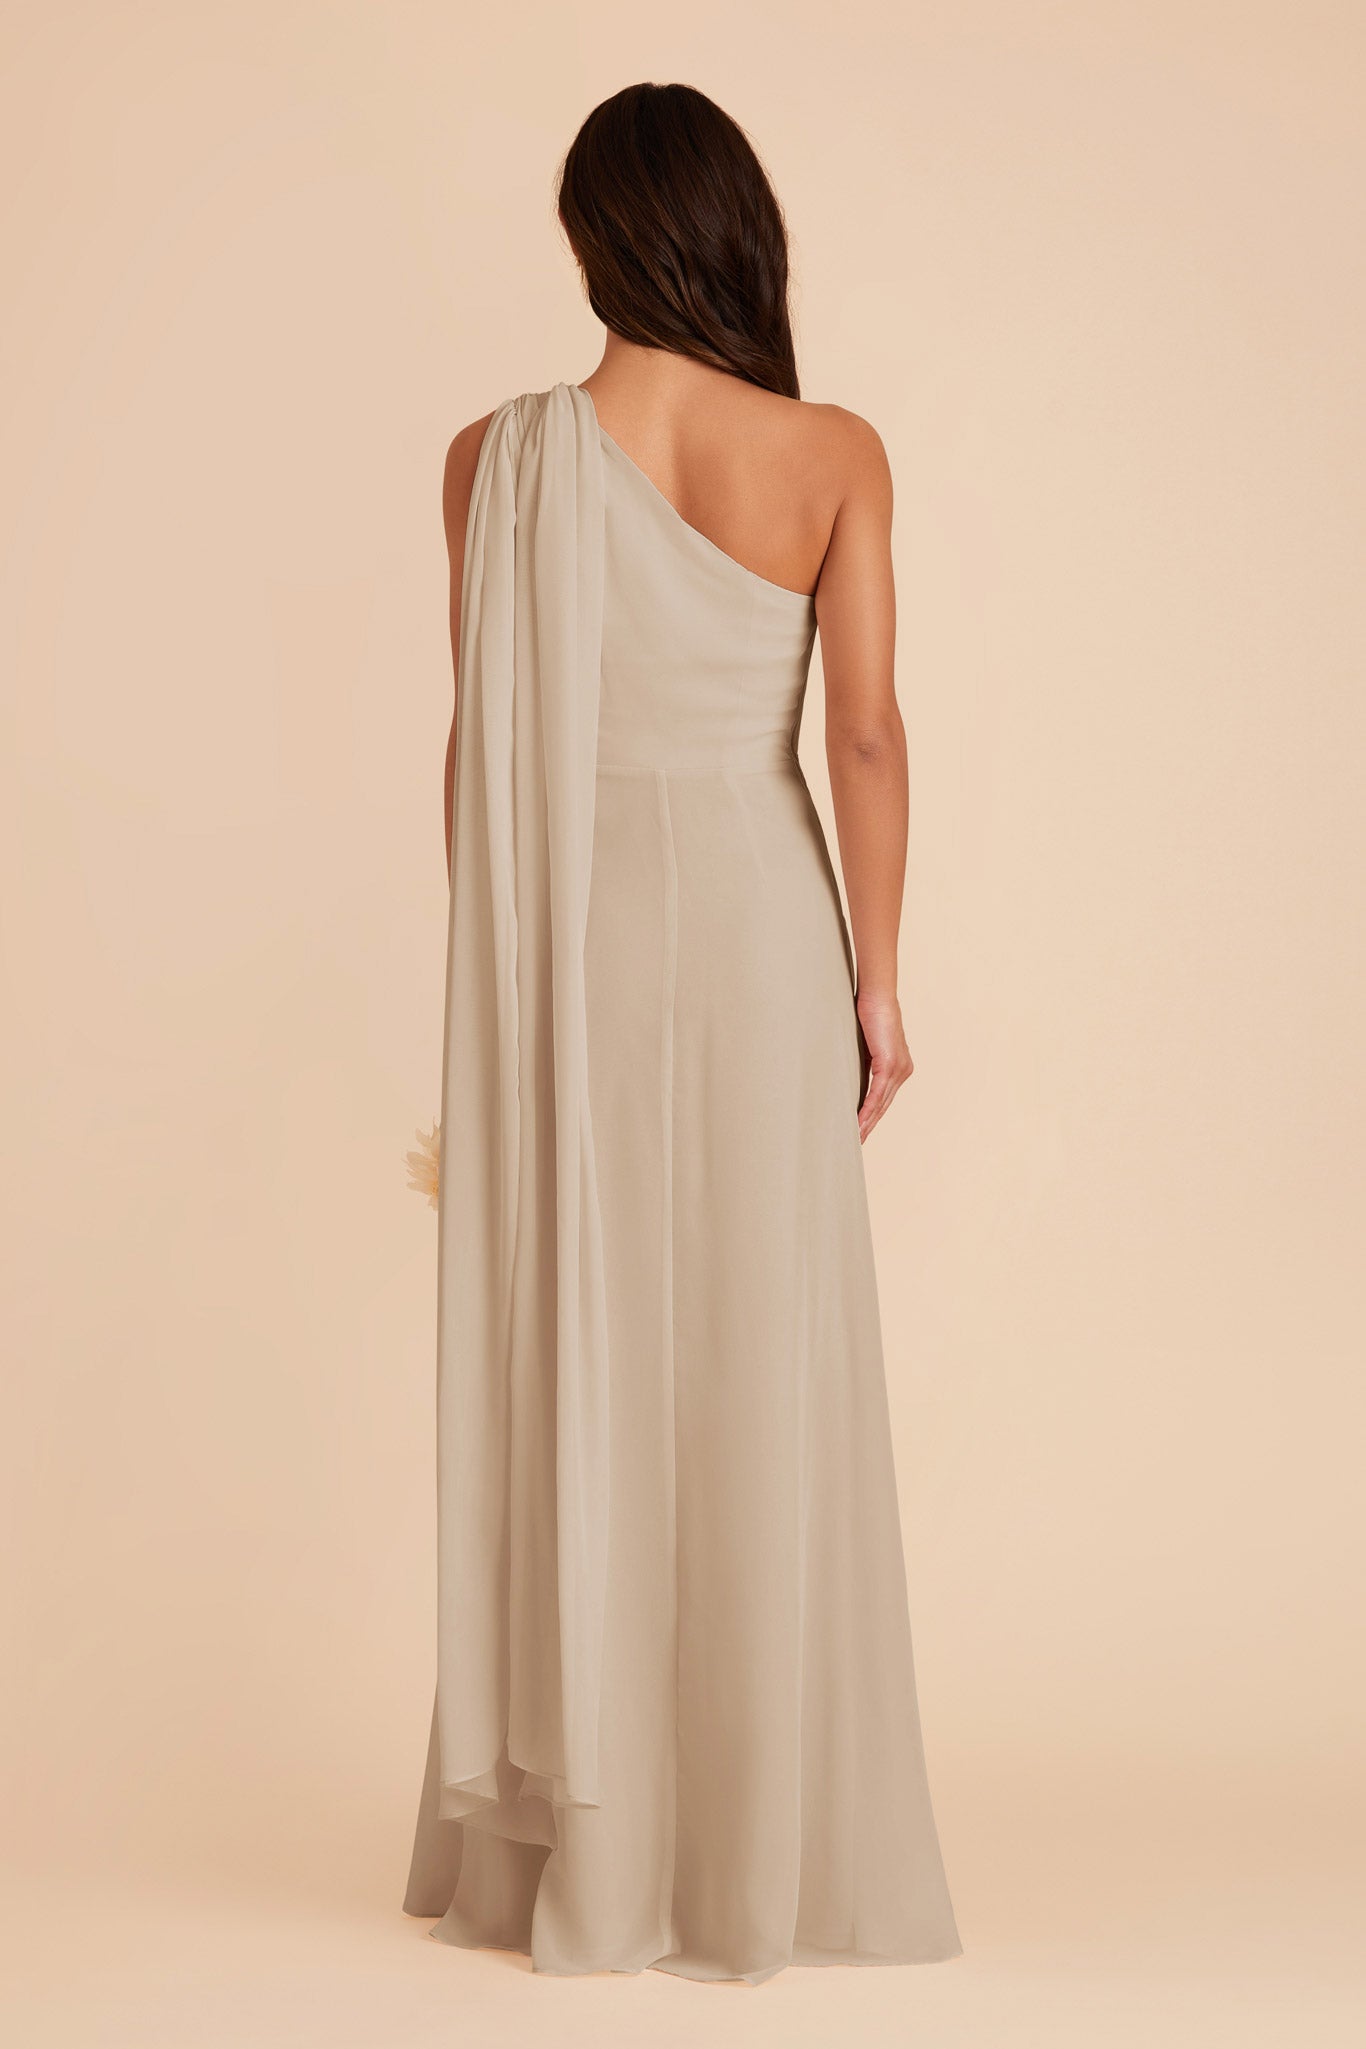 Almond Melissa Chiffon Dress by Birdy Grey